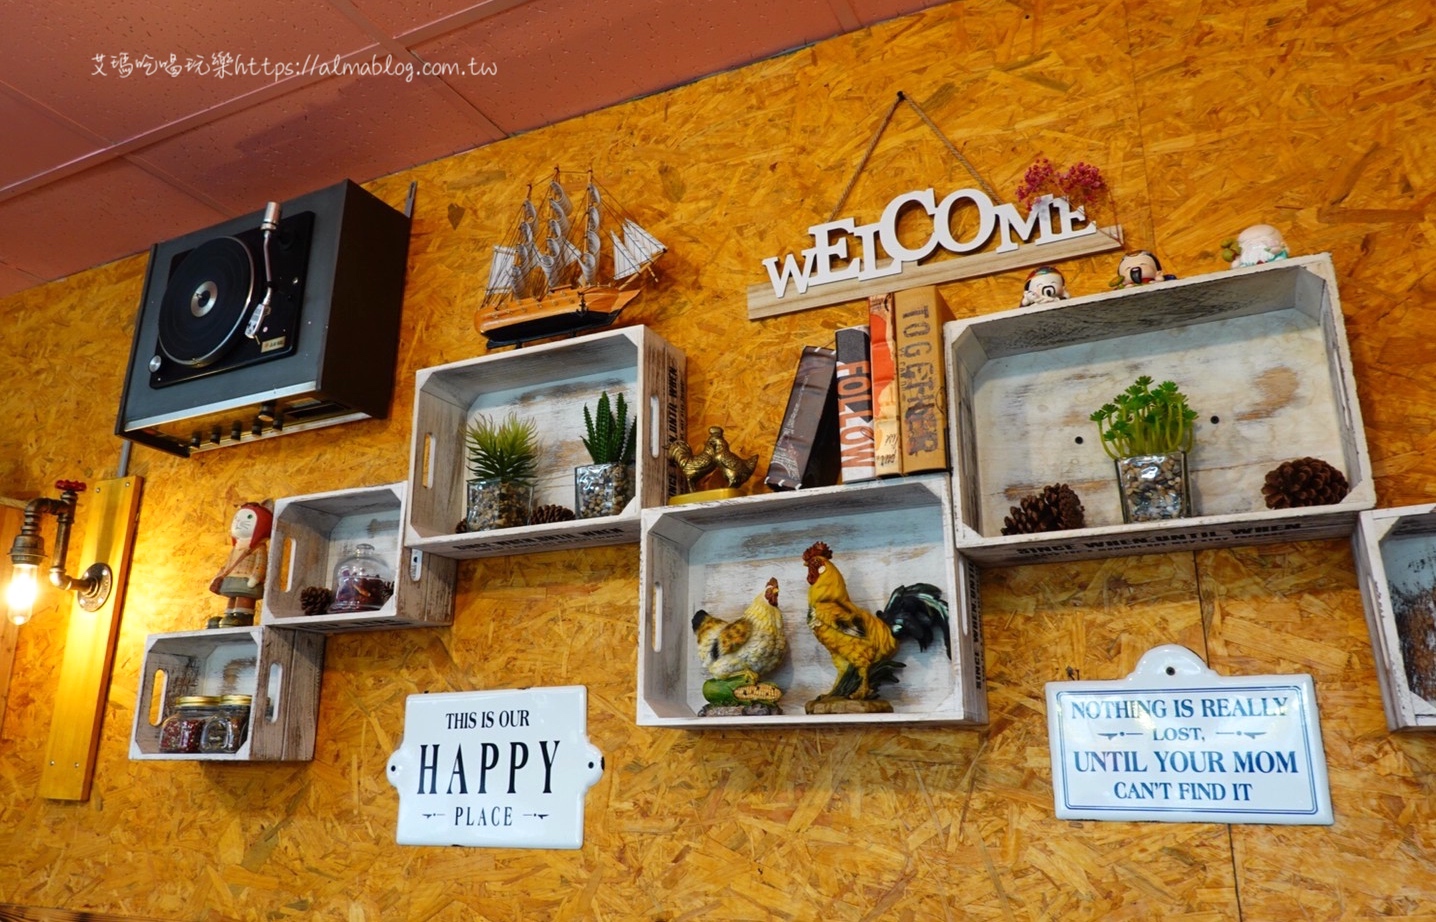 ร้านสวัสดี 莎娃迪泰式料理 Thai Restaurant,桃園後站美食,泰式料理